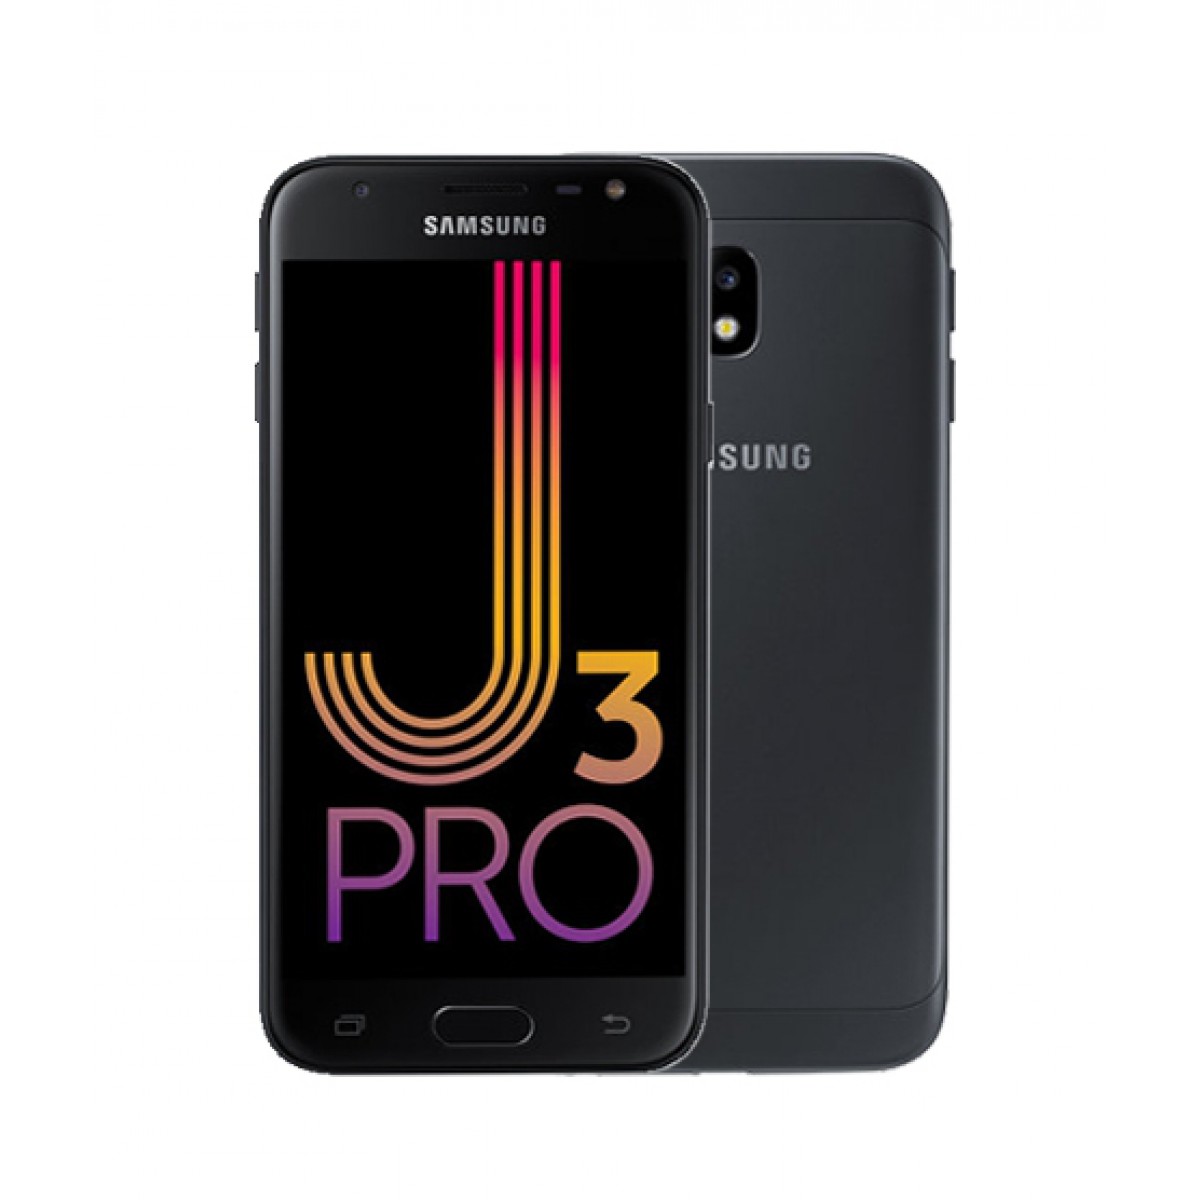 Haftaya BİM marketlerde Galaxy J3 Pro, A101 marketlerde GM 8 Go var